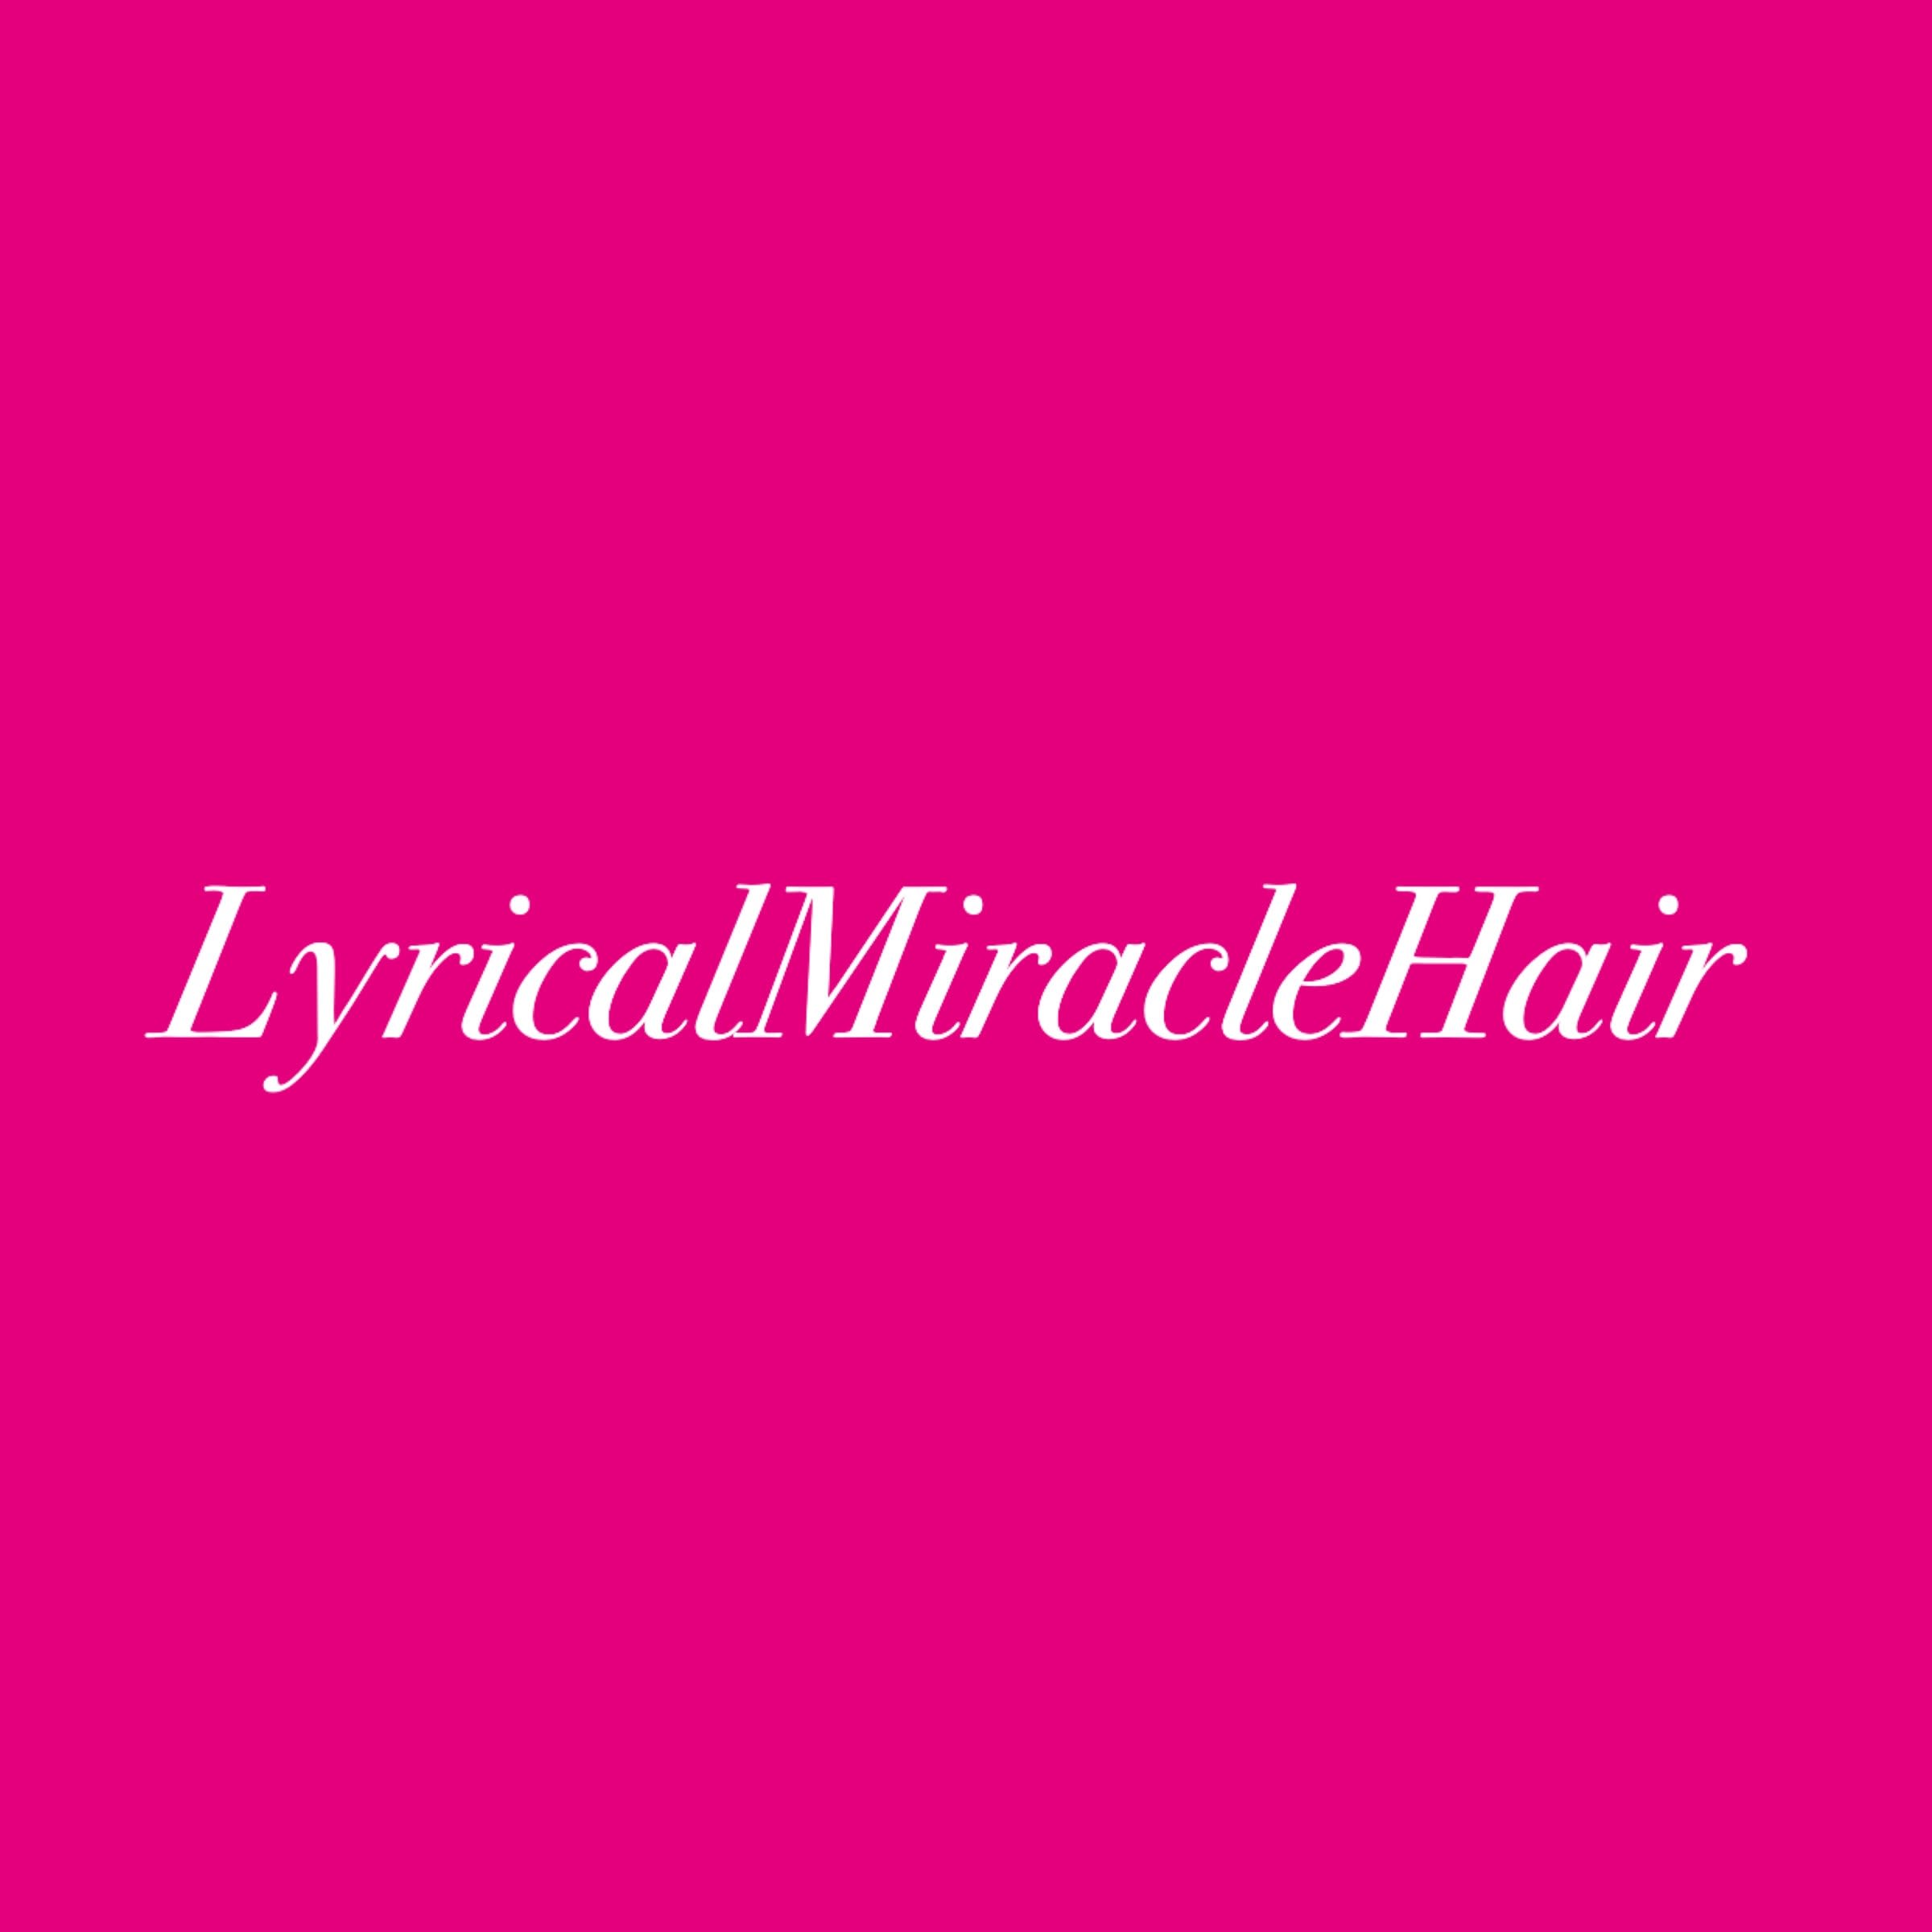 Lyrical miracle hair